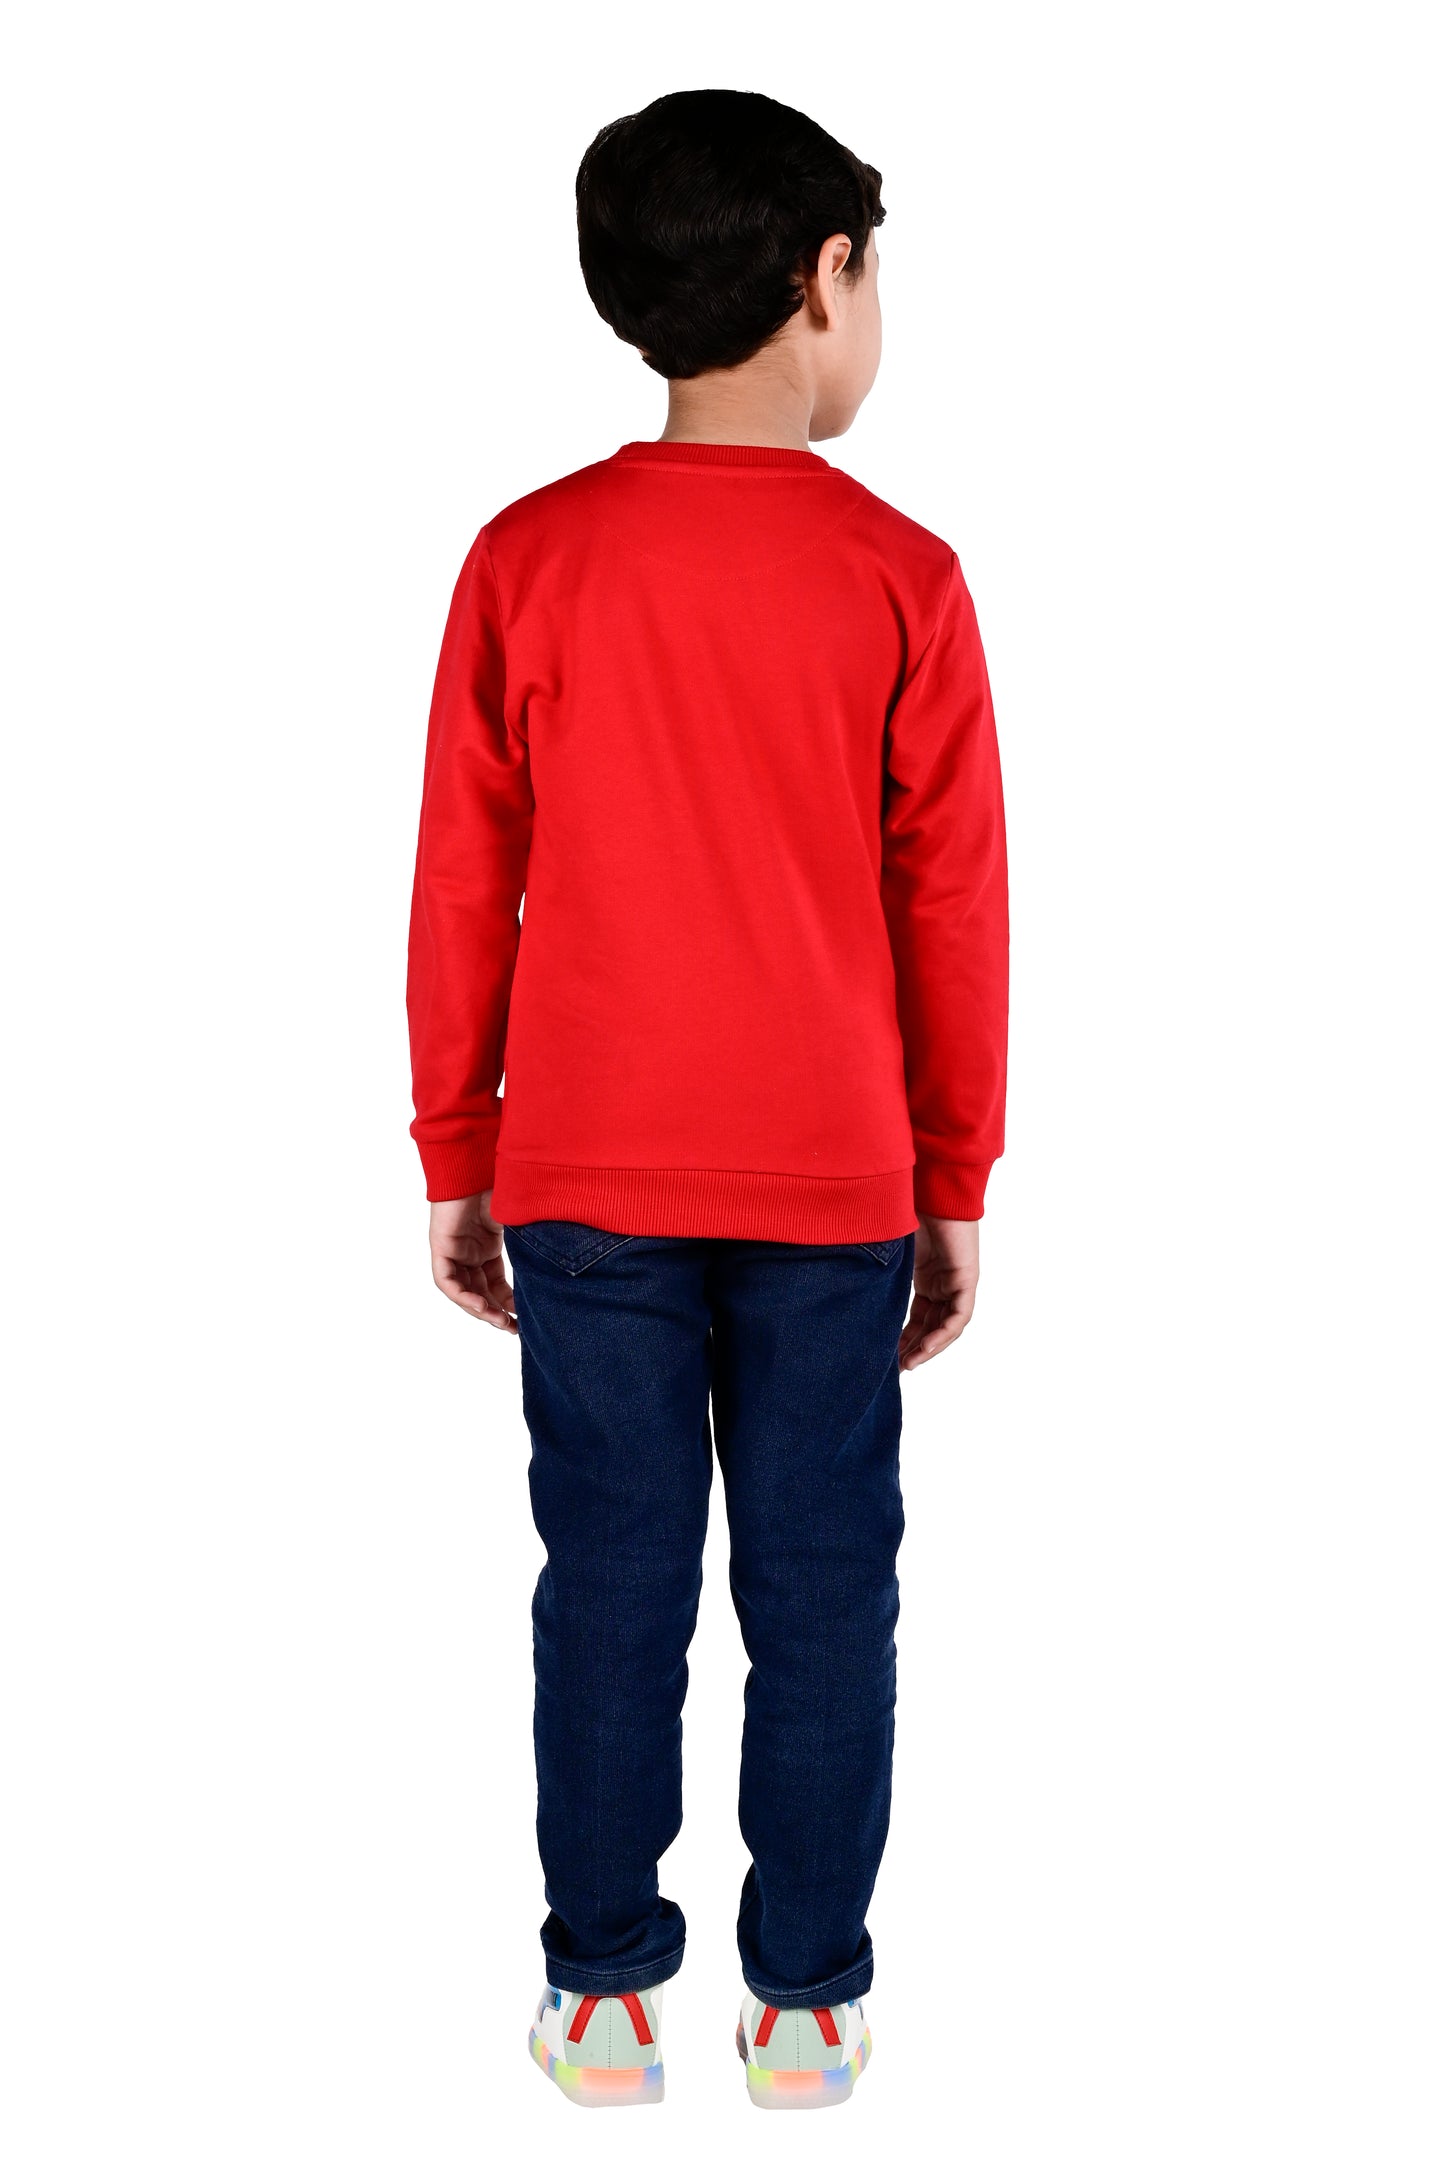 Printed Sweatshirt - Red